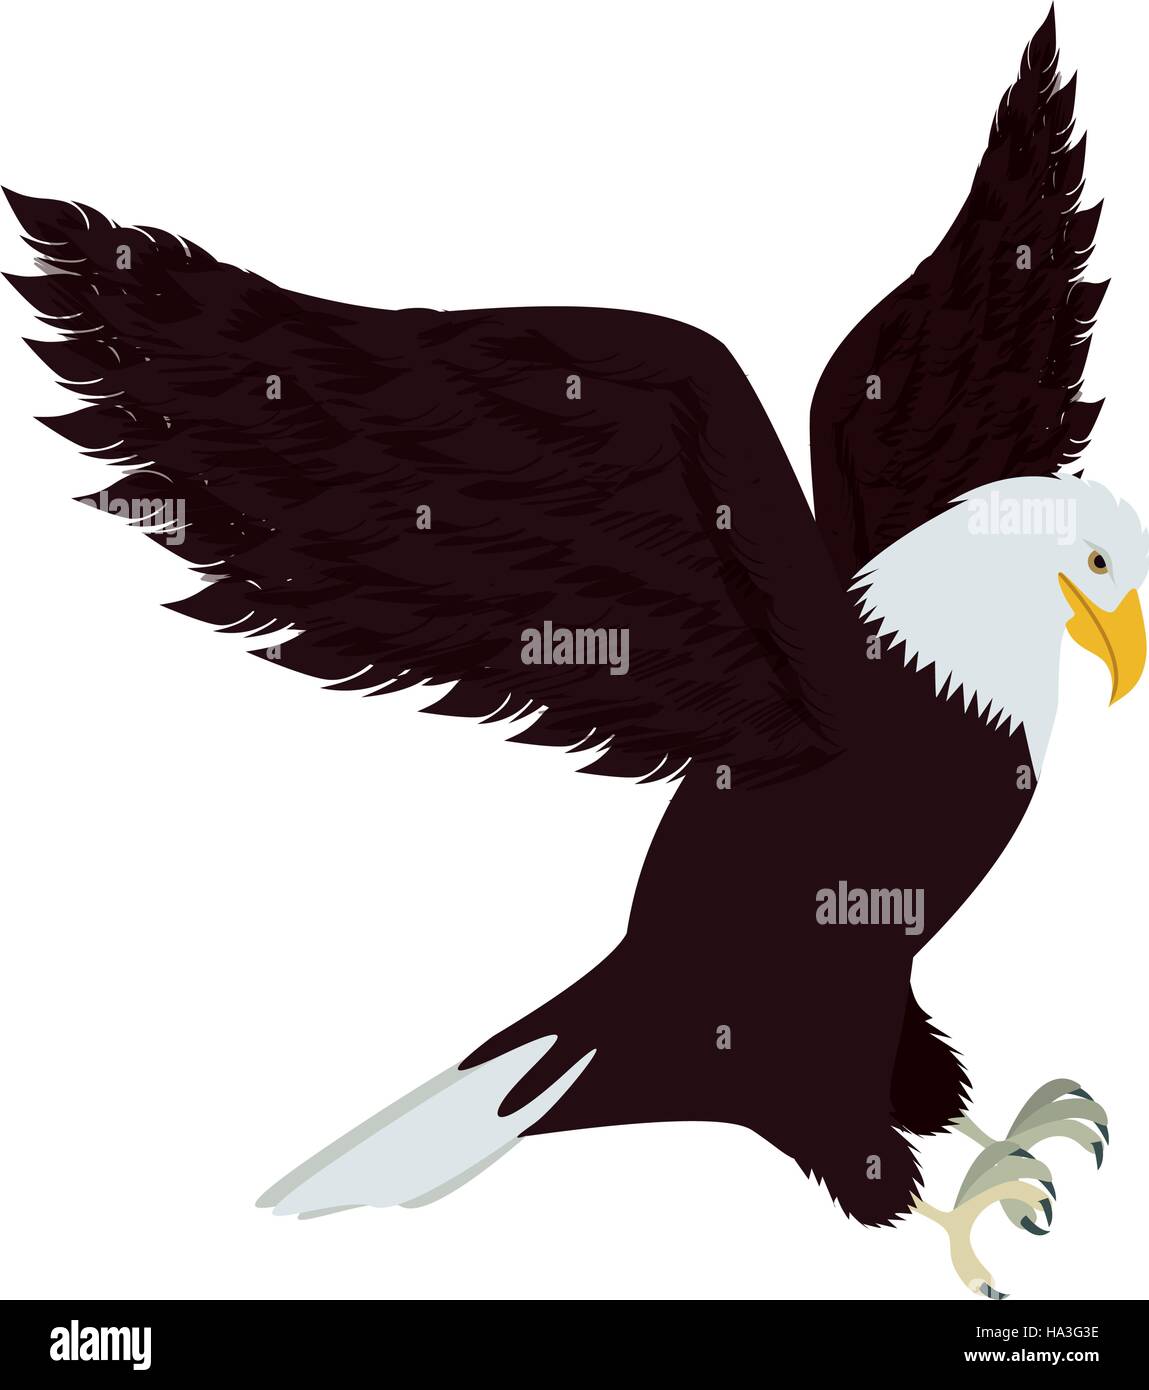 Silhouette Adler bei der Jagd Position Vektor-illustration Stock Vektor